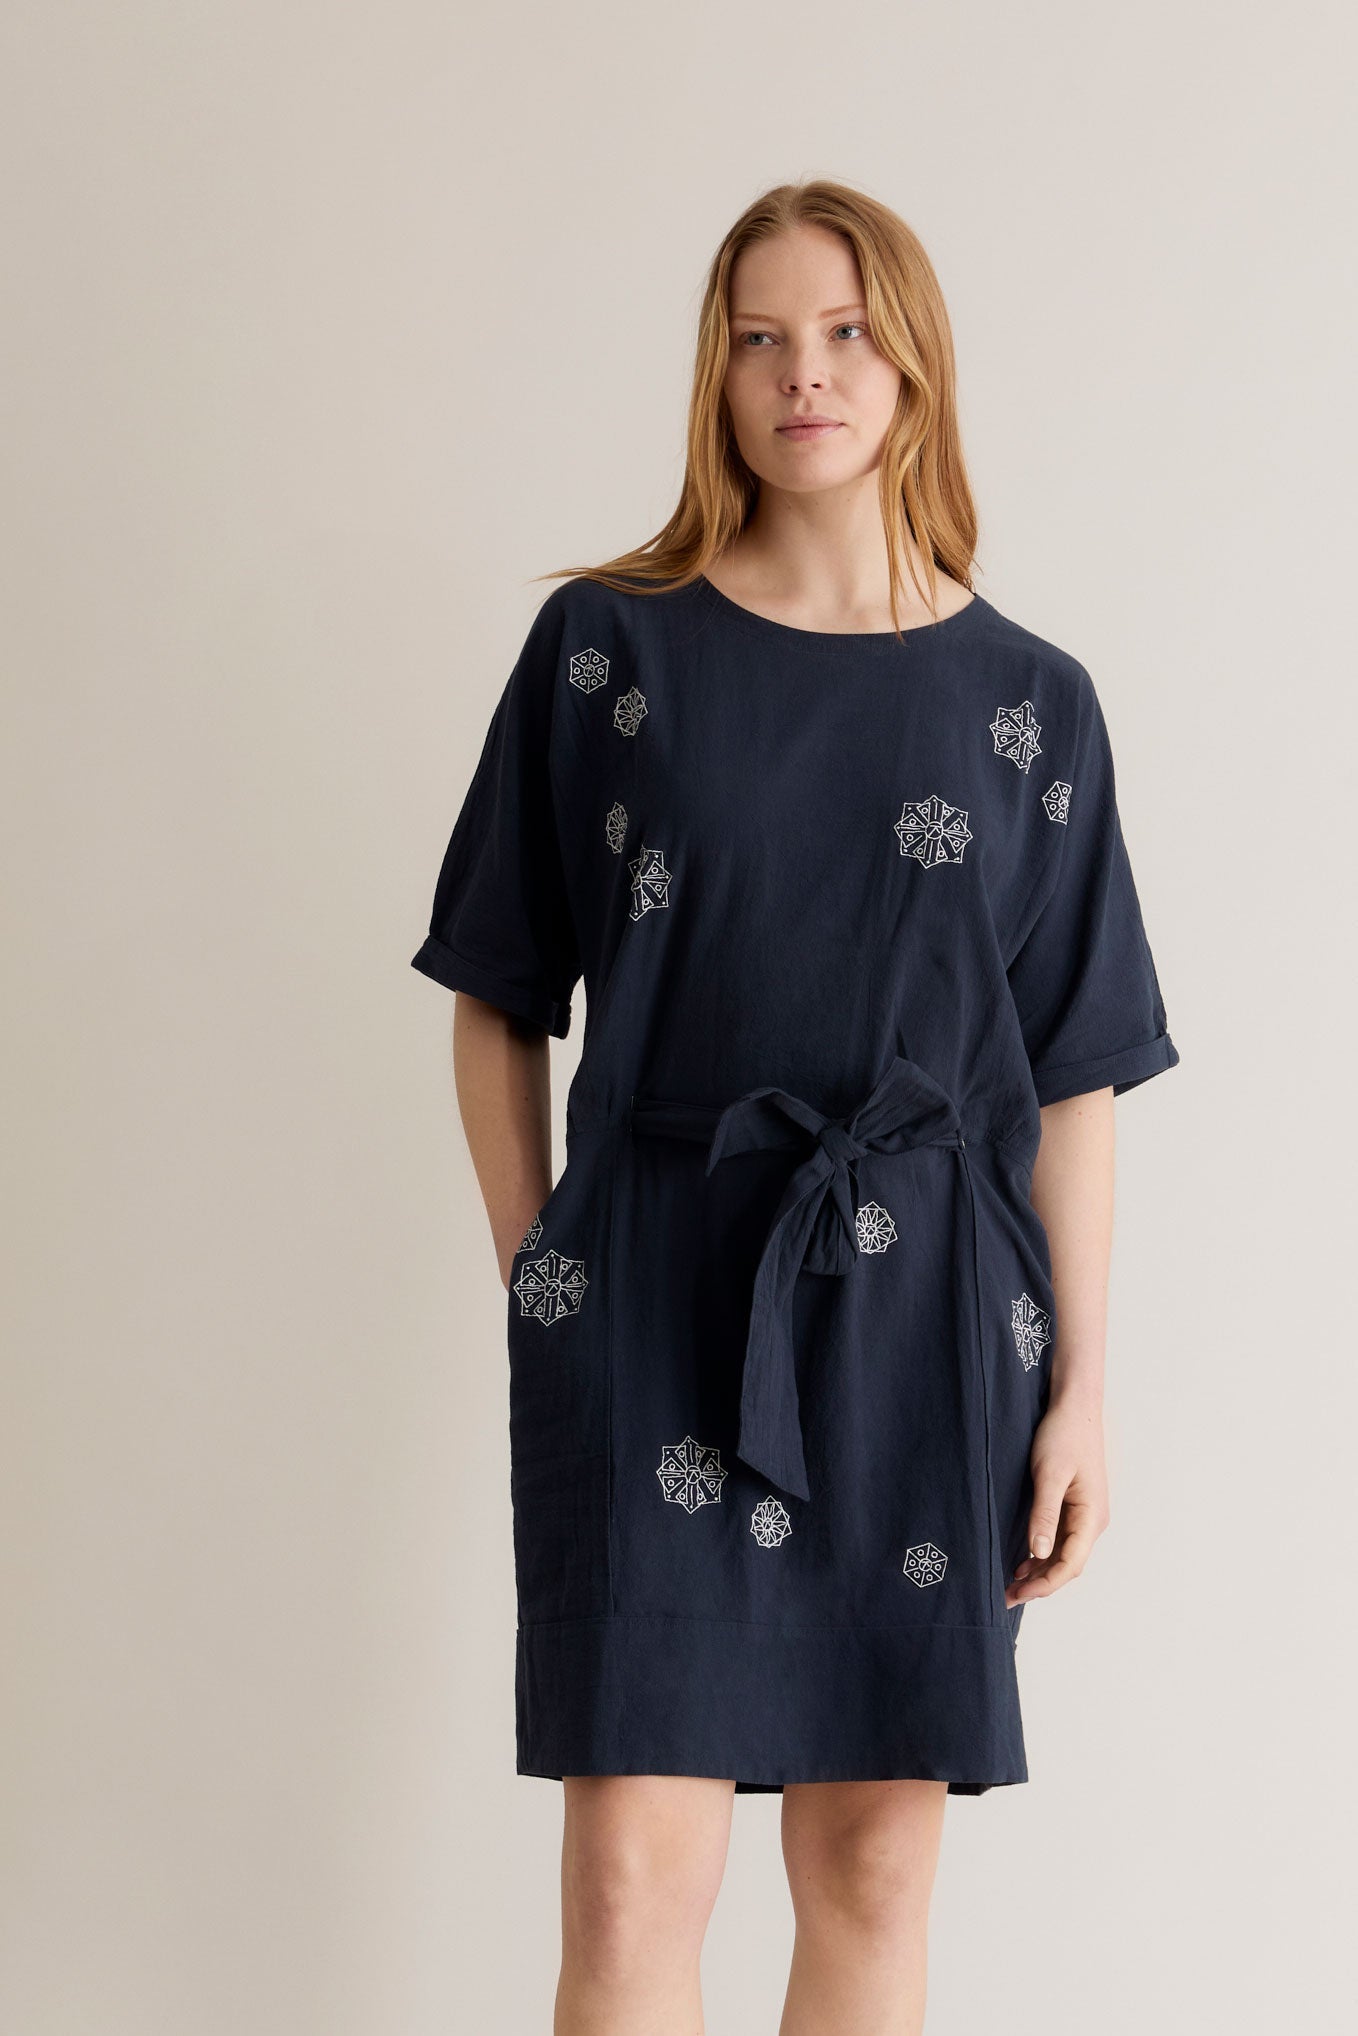 Dunkelblaues Kleid AKINA aus 100% Bio-Baumwolle von Komodo